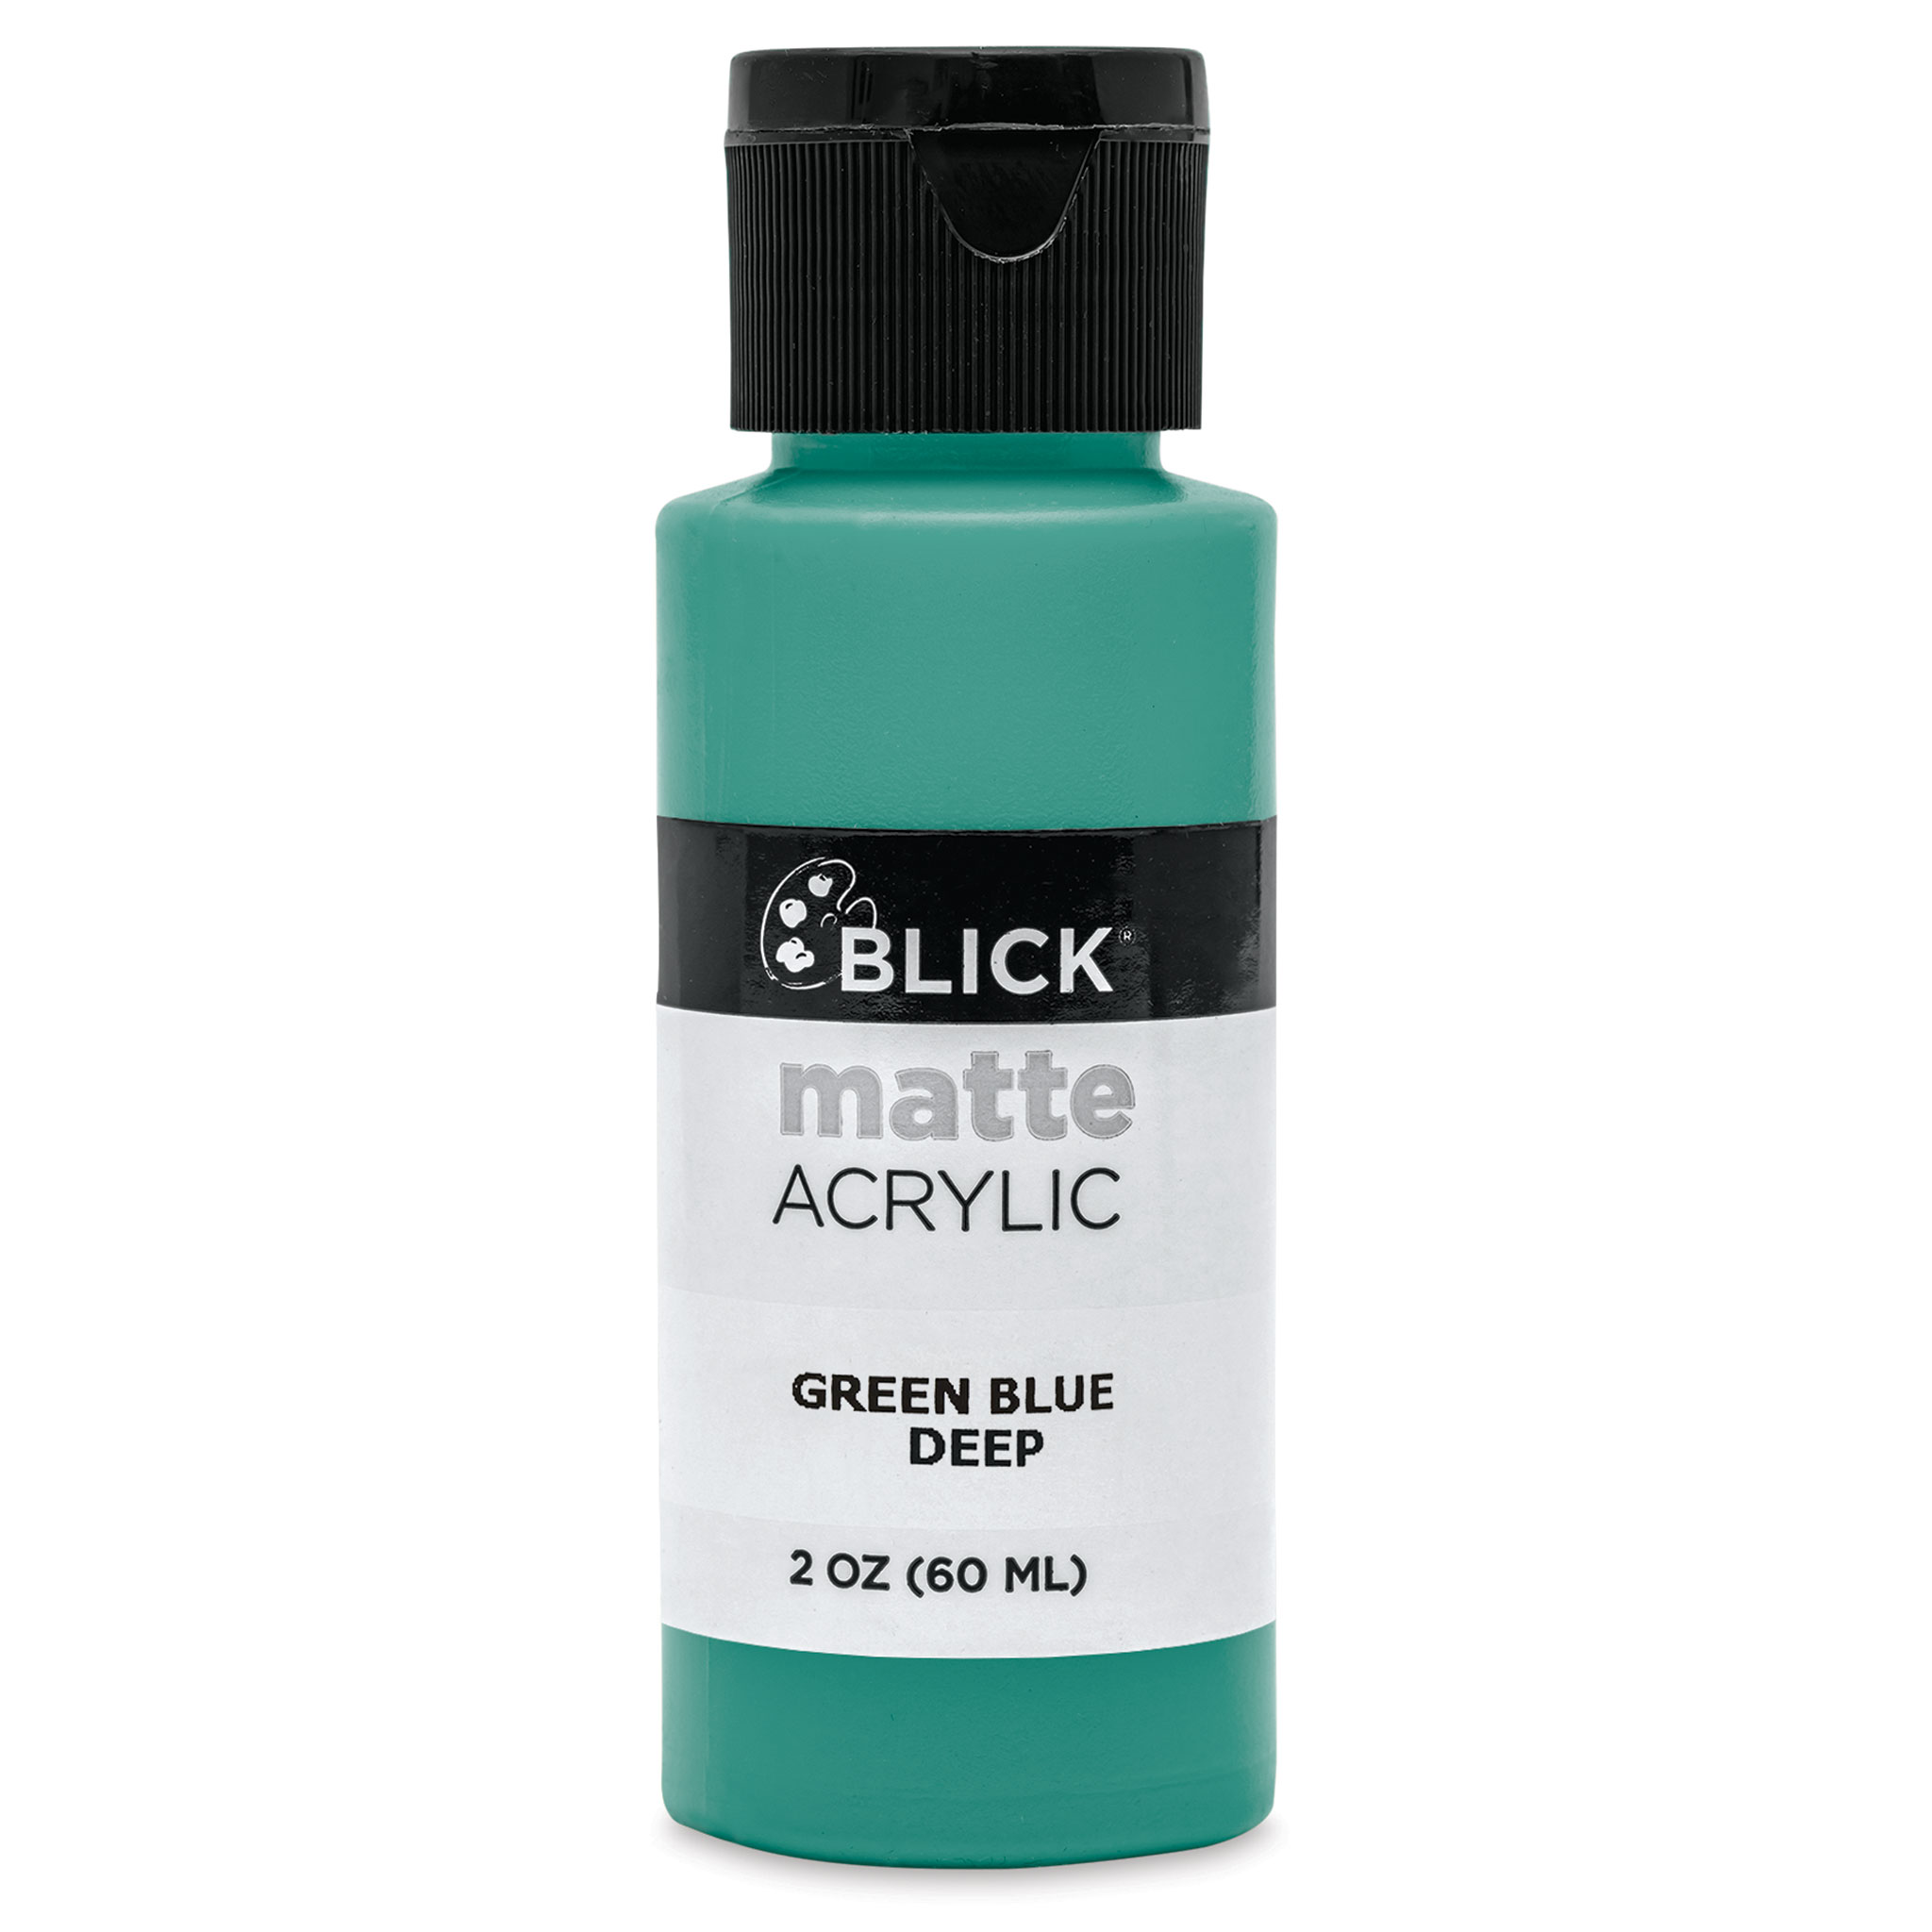 Blick Matte Acrylic - Green Blue Deep, 2 oz Bottle